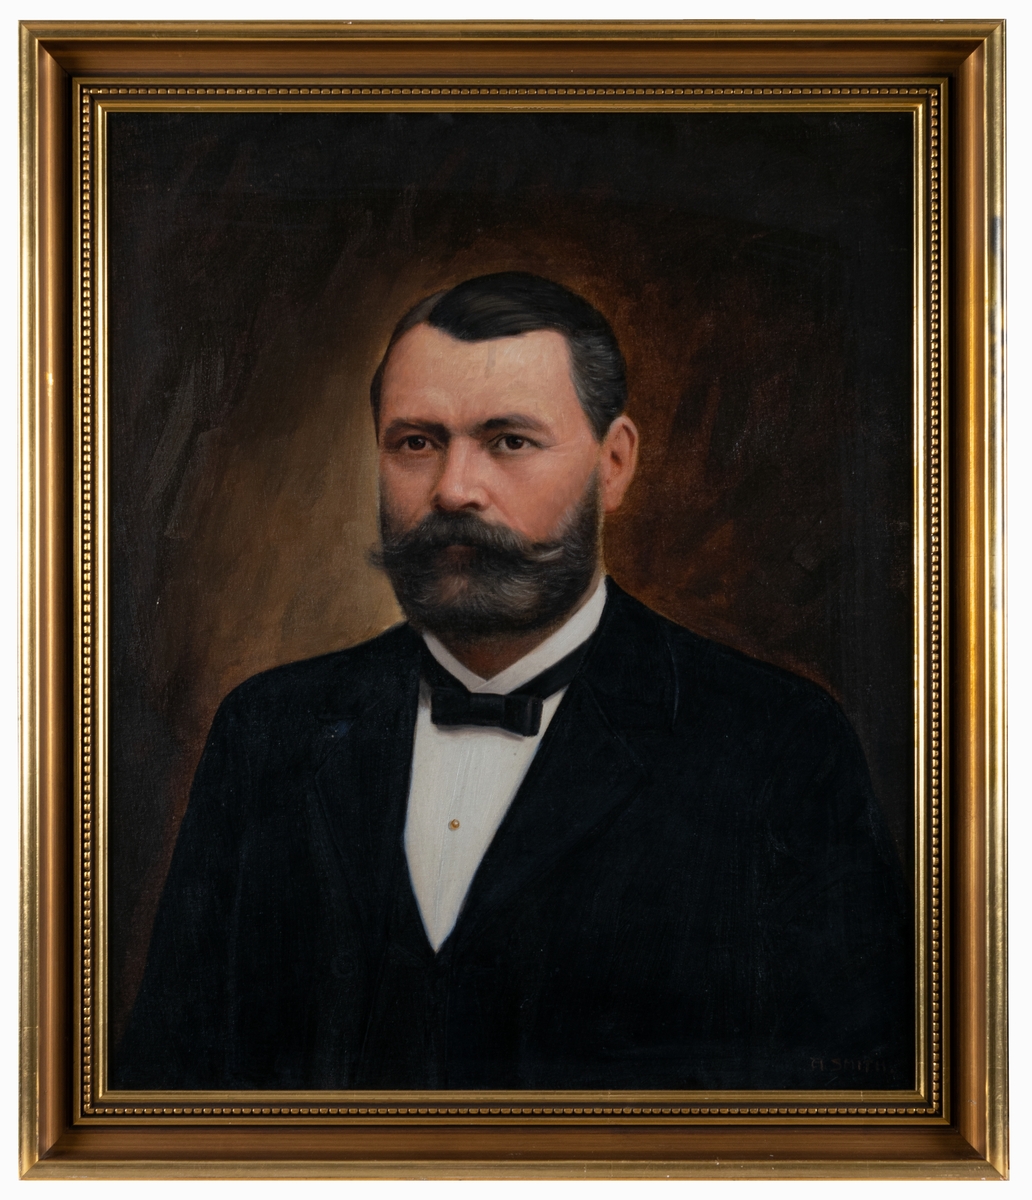 Porträtt av Fredrik Ahlgren, död 1907, grundare av F Ahlgrens Tekniska Fabrik AB 1885. Målat av konstnär Axel Smith i början av 1900-talet.